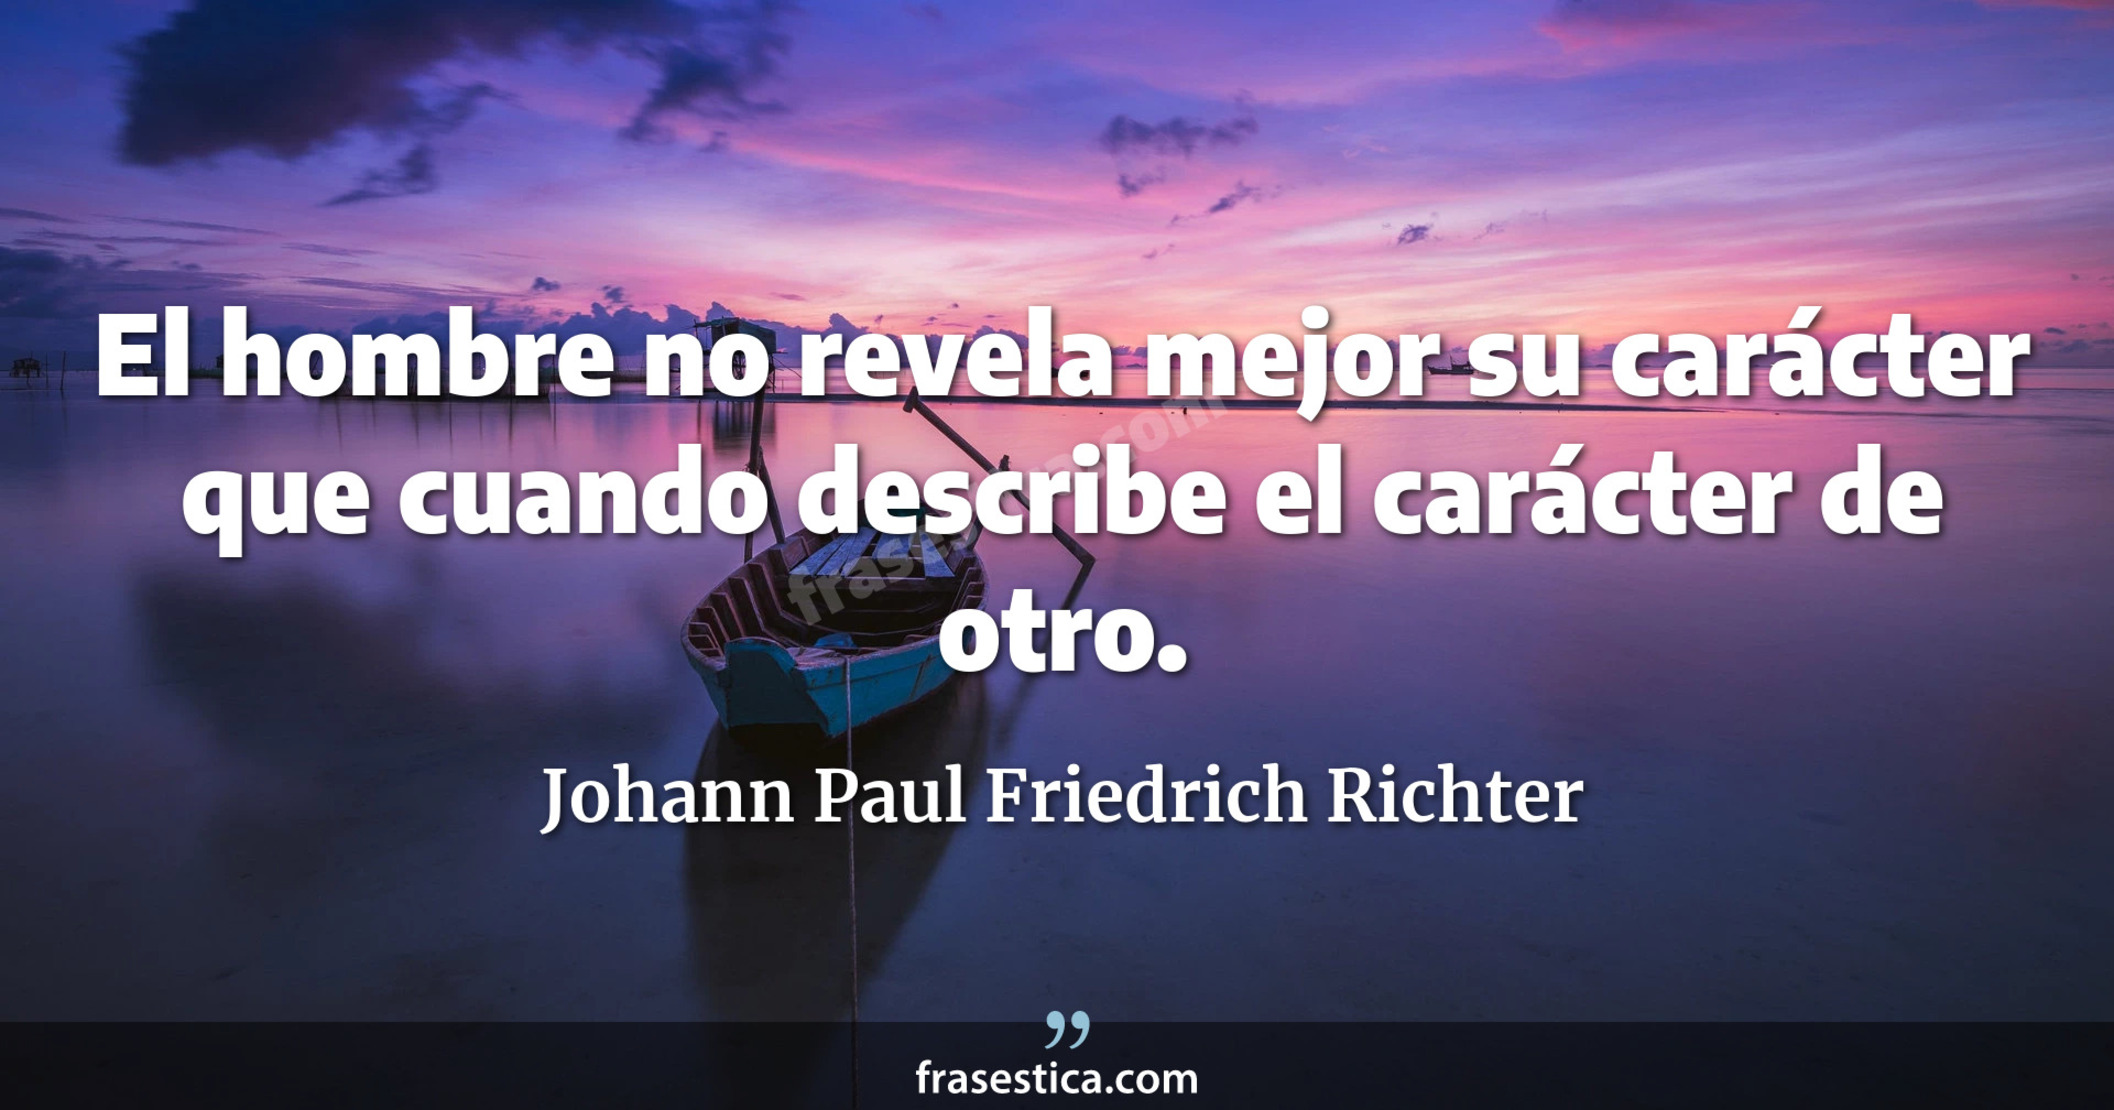 El hombre no revela mejor su carácter que cuando describe el carácter de otro. - Johann Paul Friedrich Richter